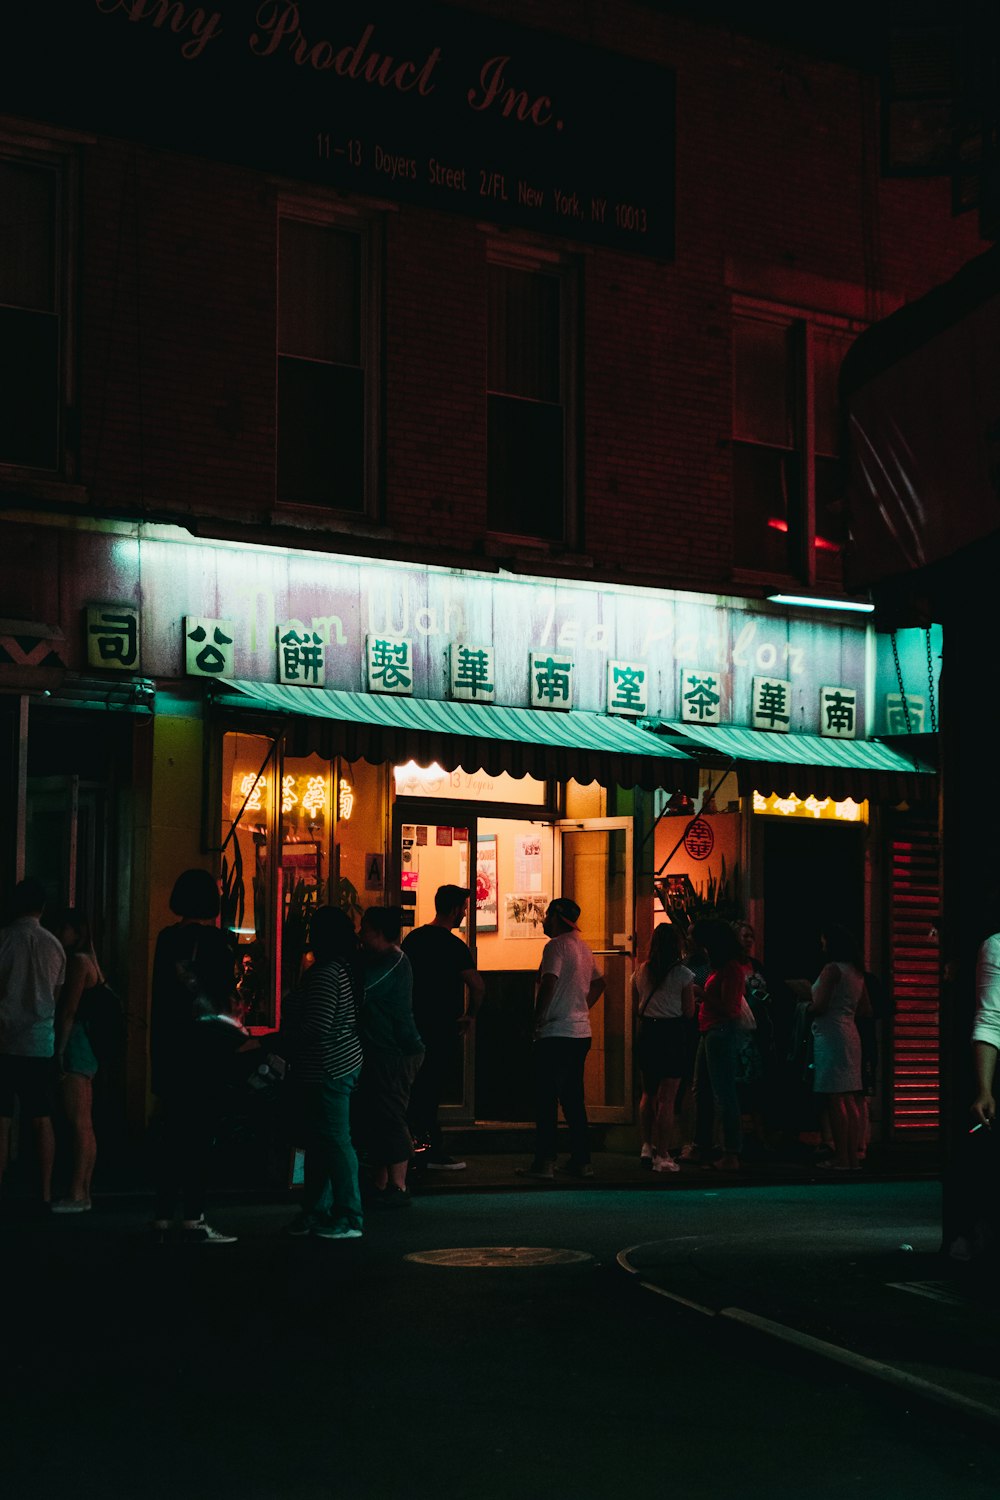 personnes debout devant le magasin pendant la nuit